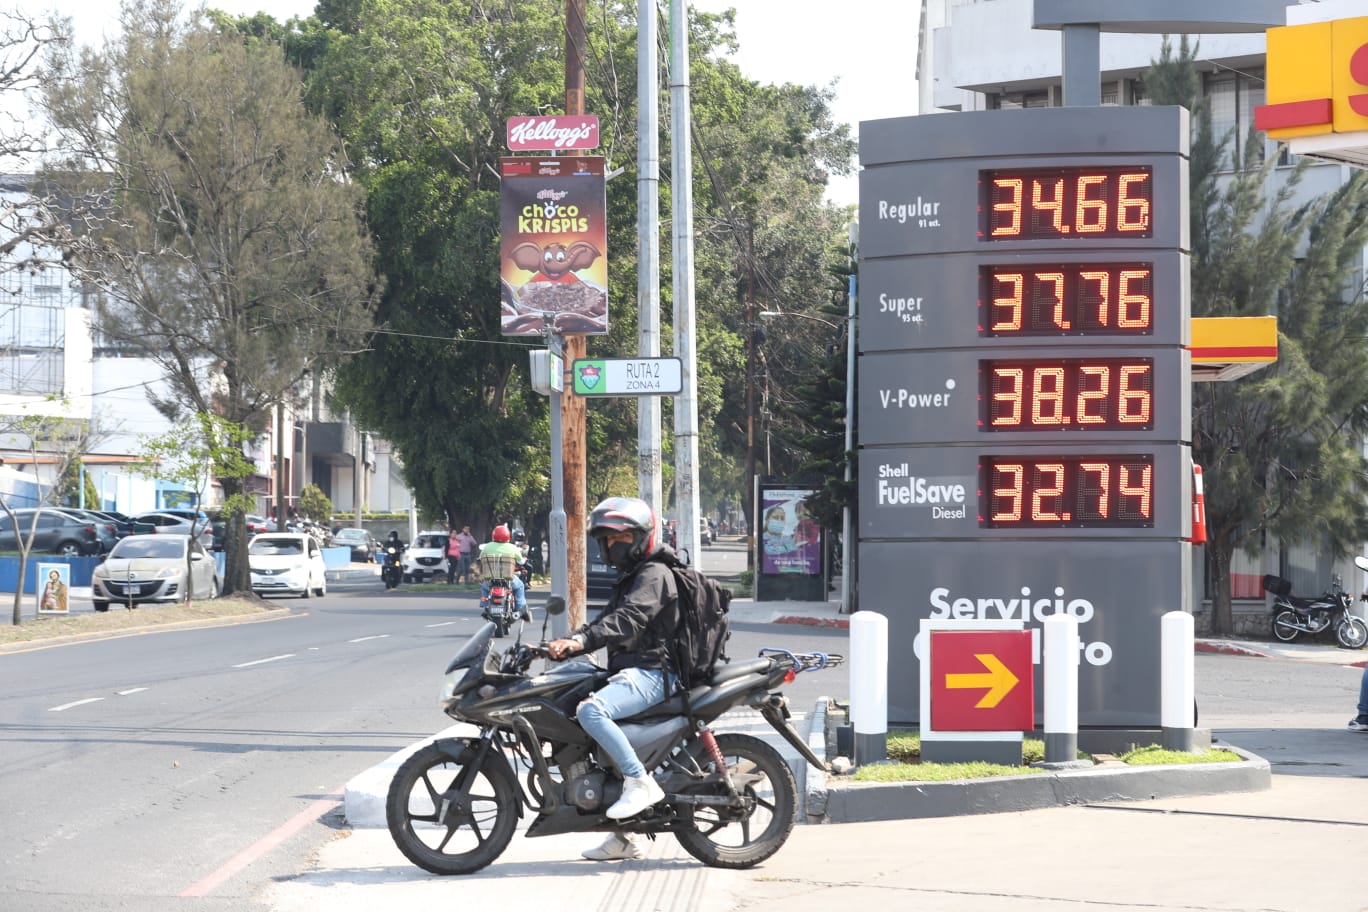 El precio del diésel y la gasolina regular aumentaron este 19 de abril, según precios de referencia del Ministerio de Energía y Minas. (Foto Prensa Libre: Roberto López)